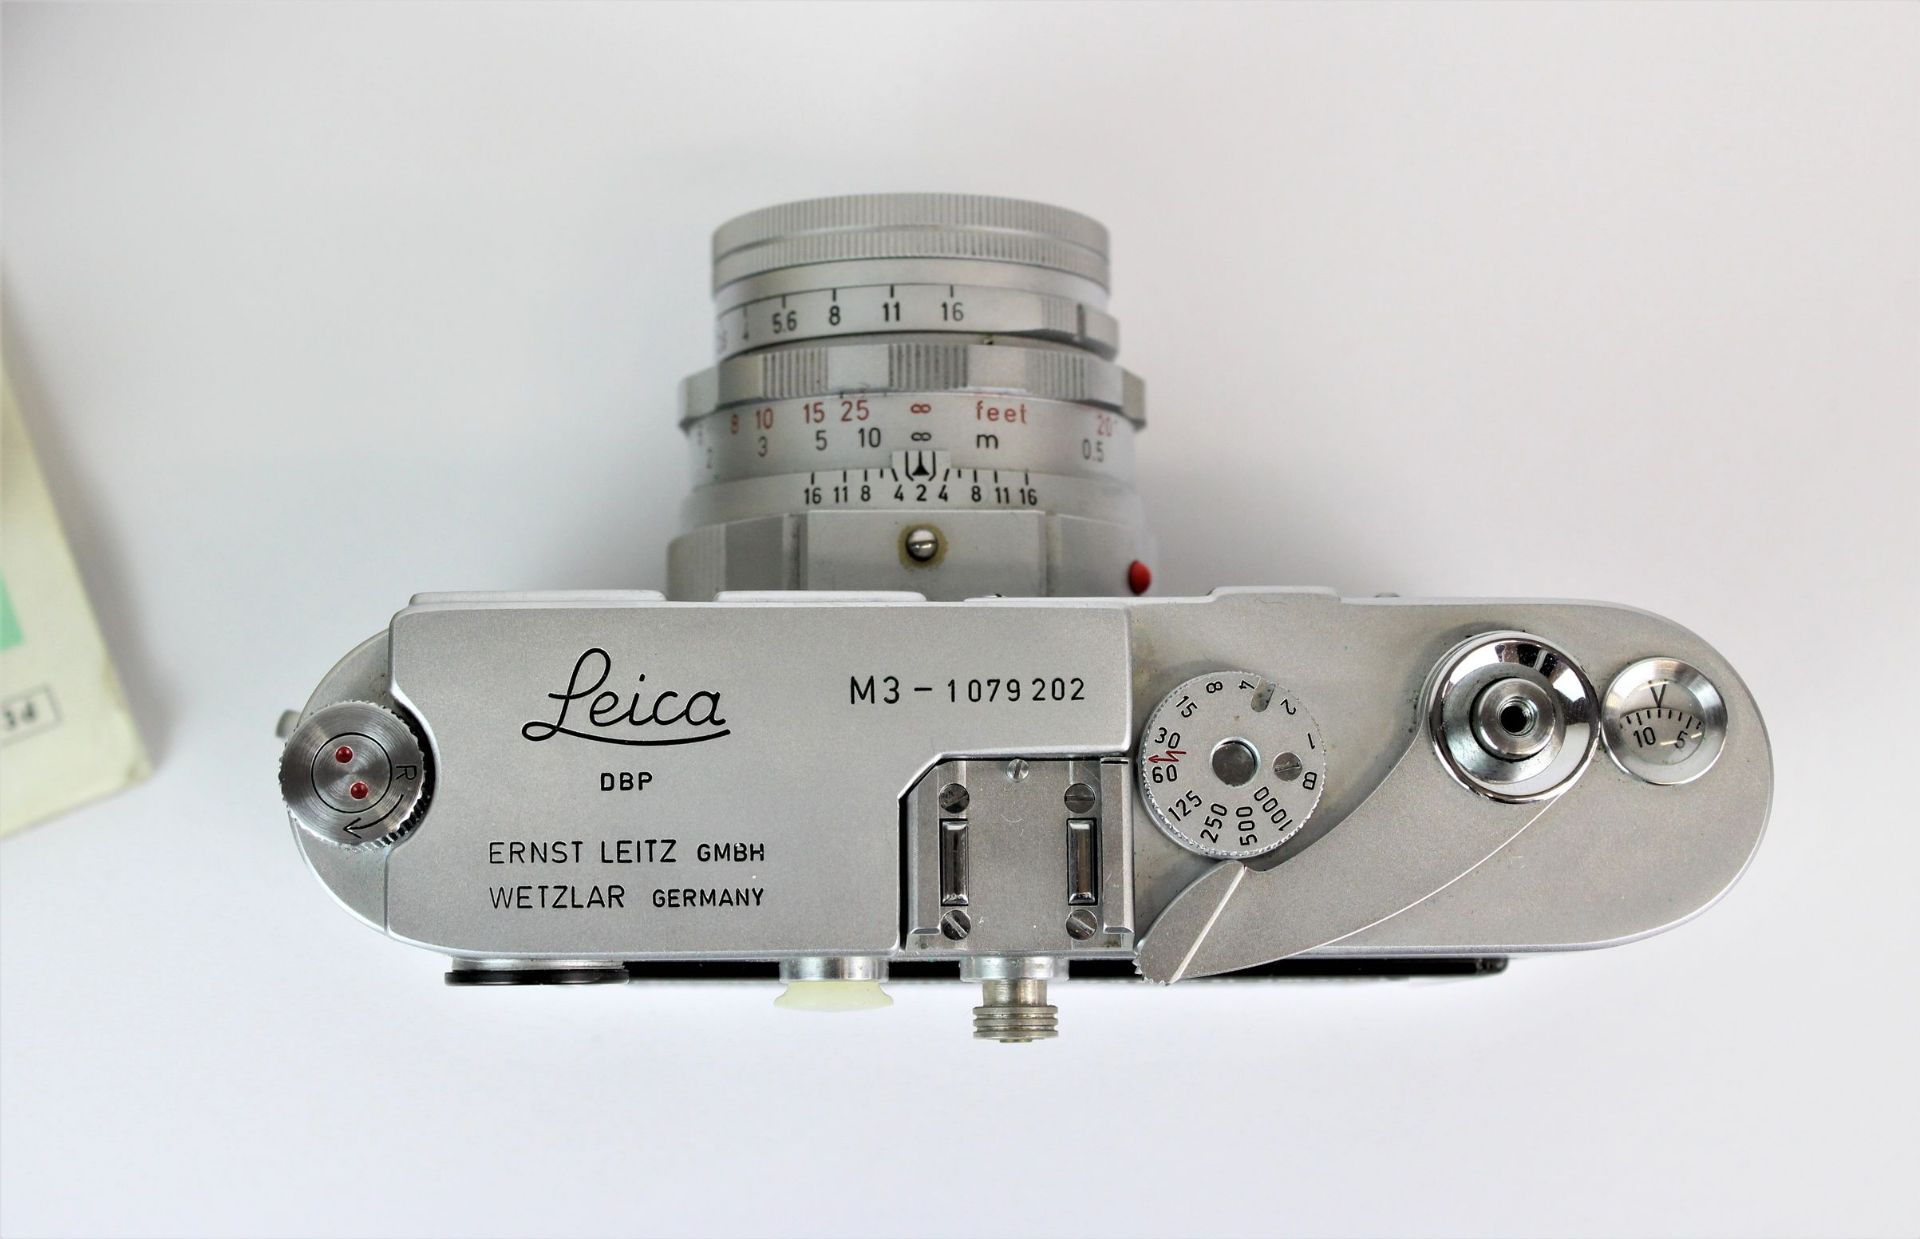 Leica M3 im originalen Lederetui mit Leitz Summicron 1:2/ 50 Objektiv und Belichtungsmesser - Image 3 of 4